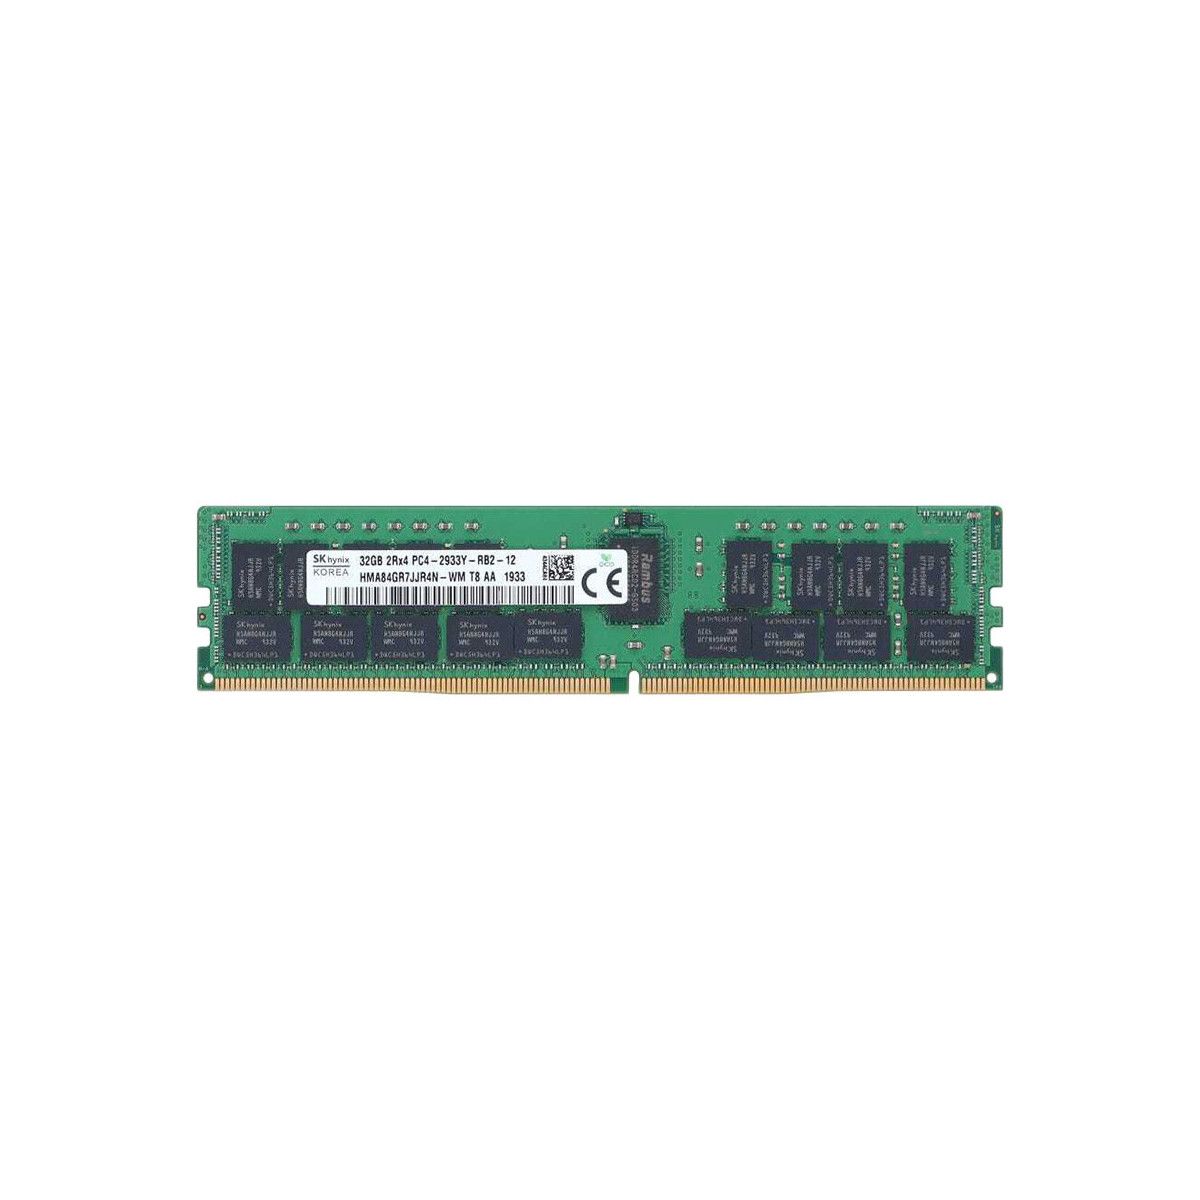 4ZC7A08709-MS - Memstar 1x 32GB DDR4-2933 RDIMM PC4-23466U-R